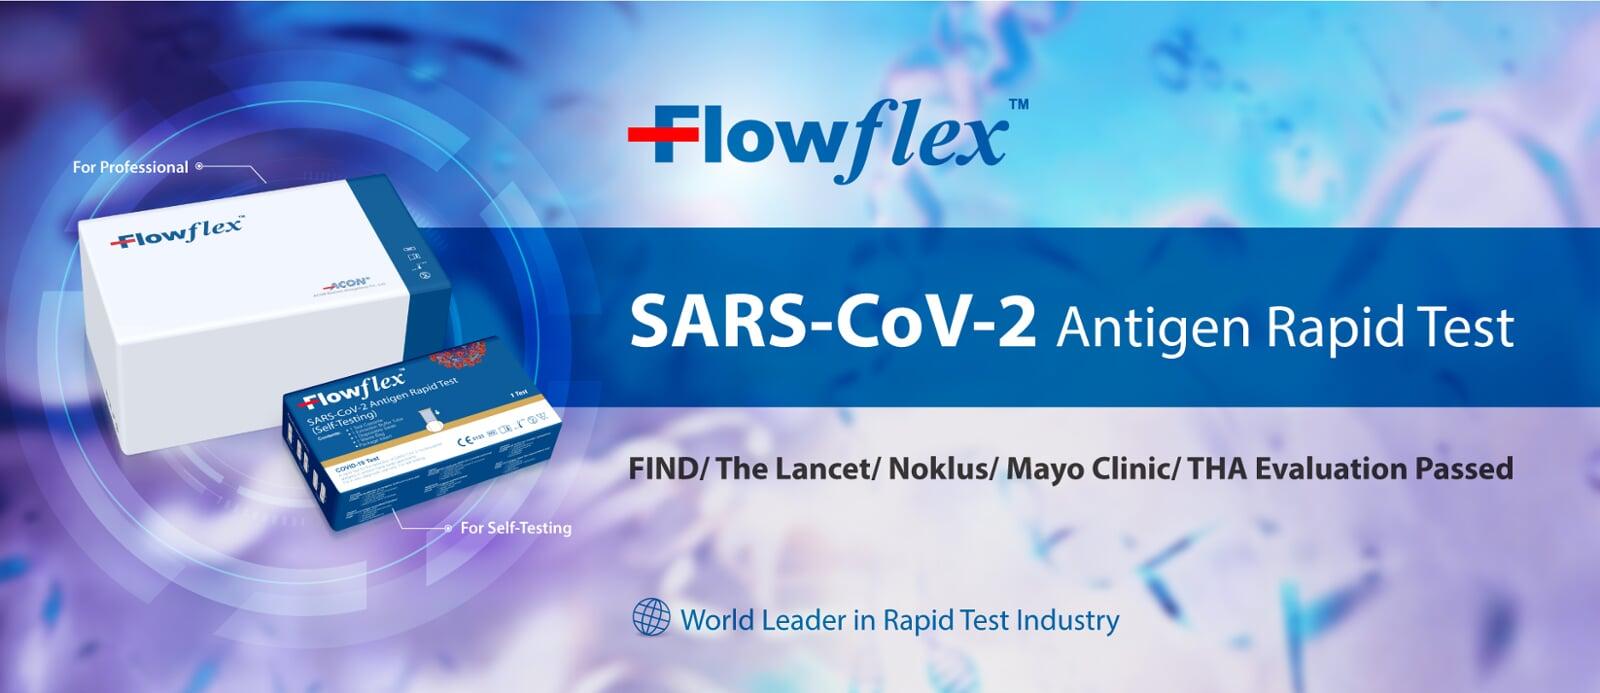 [DEEL LABS] Flowflex SARS-CoV-2 Antigen Rapid Test